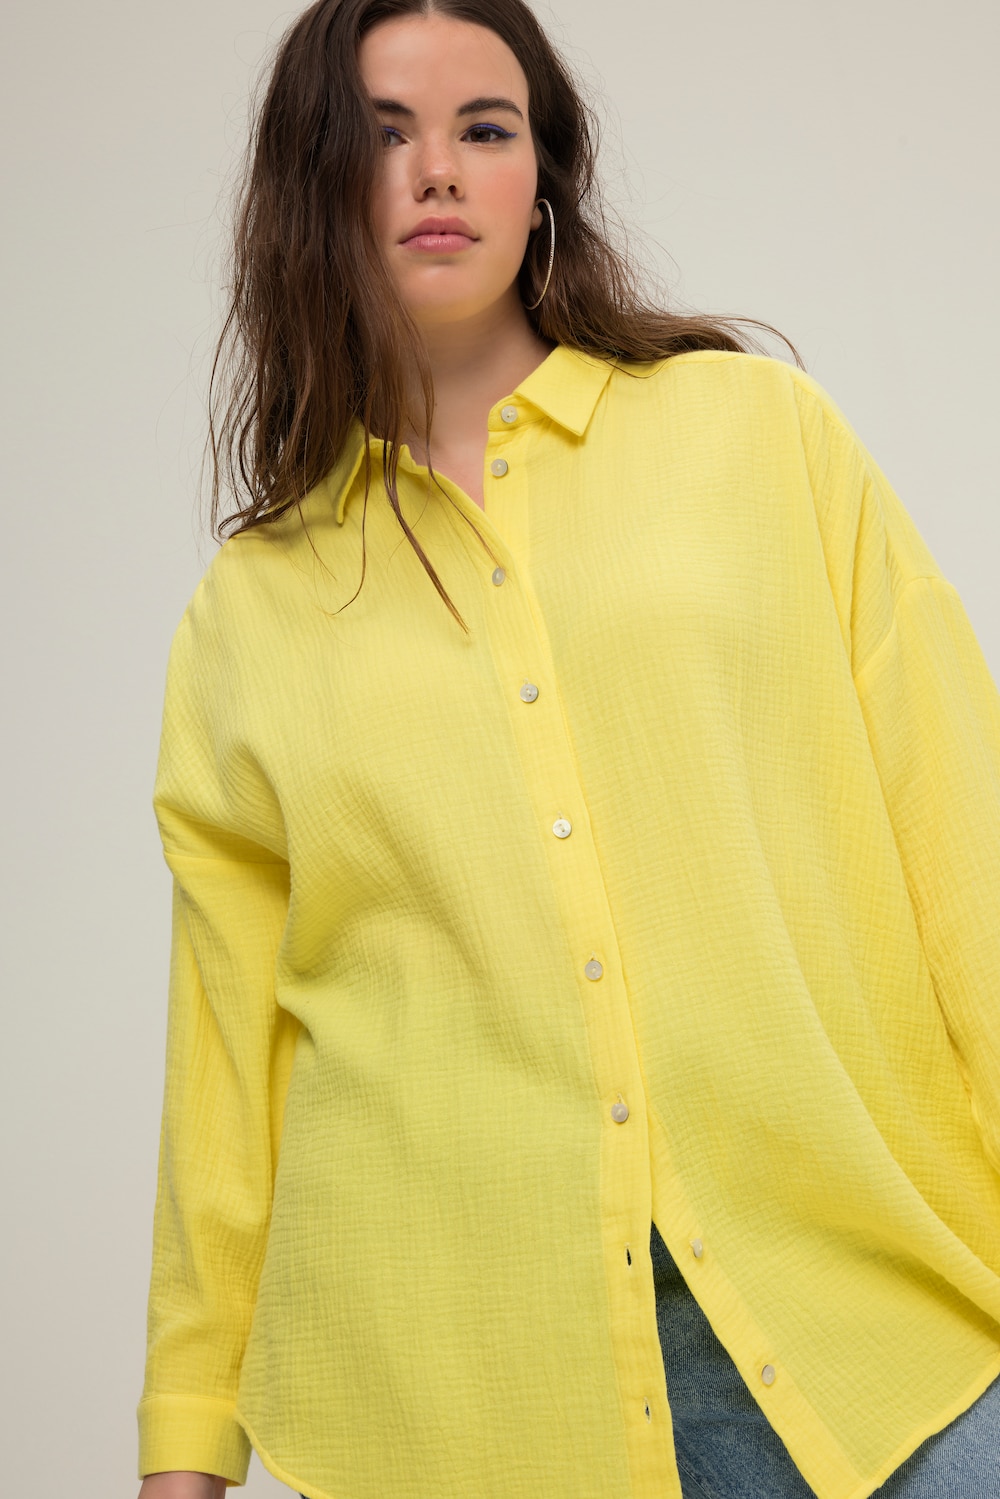 Grote Maten Mousseline blouse, Dames, geel, Maat: 42/44, Katoen, Studio Untold